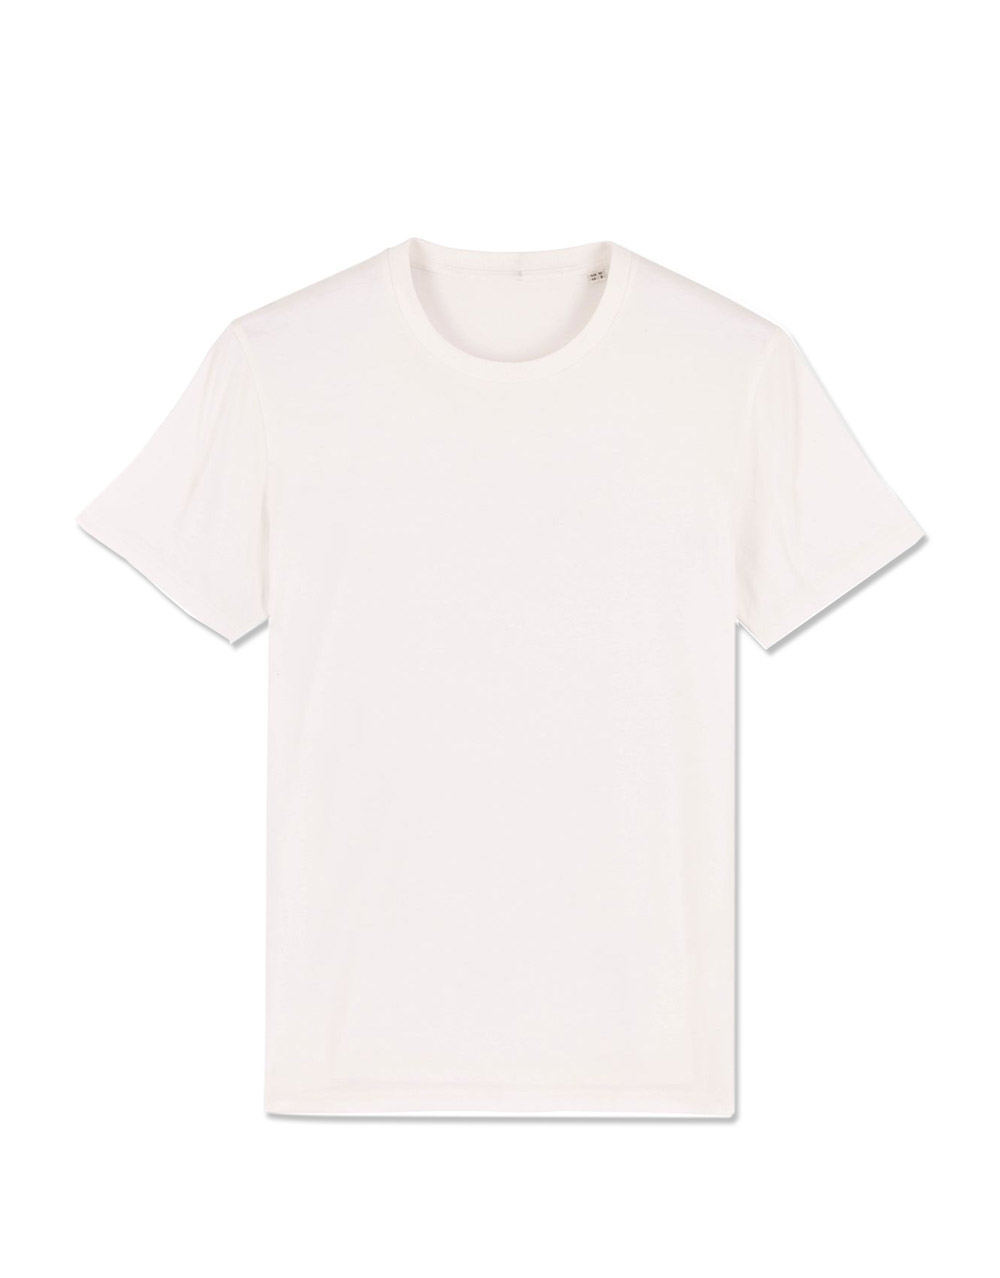 STANLEY/STELLA – Creator unisex t-shirt